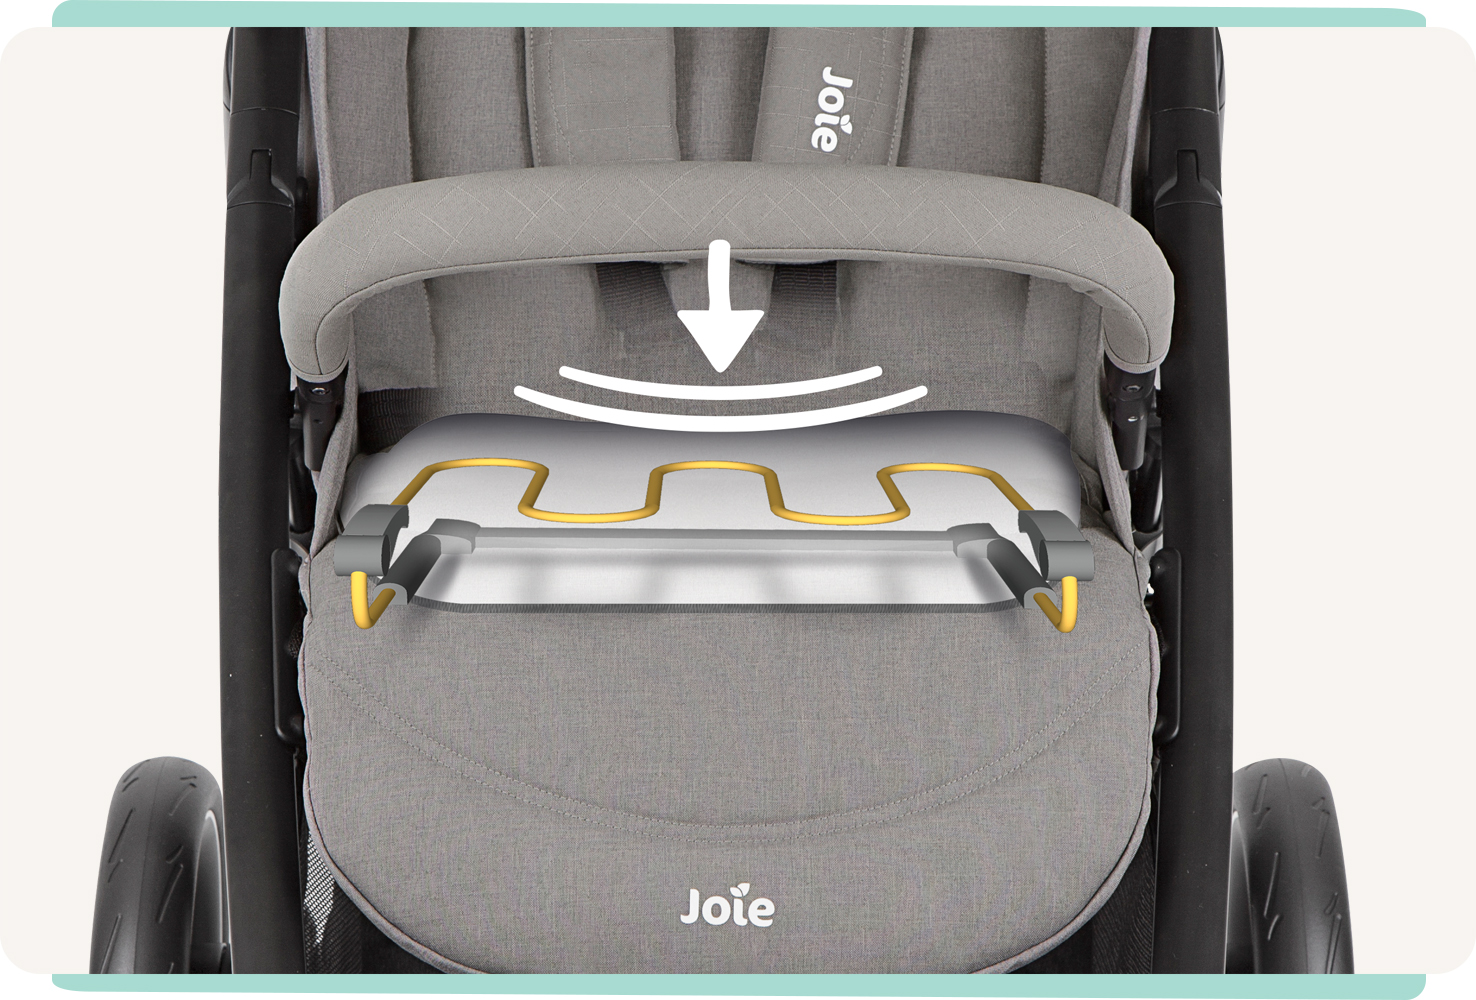  JoIe gray litetrax stroller with an illustration of a spring within the seat. Joie litetrax 4 Kinderwagen in grau. Nahaufnahme des Sitzes mit Animation der flexiblen Feder.